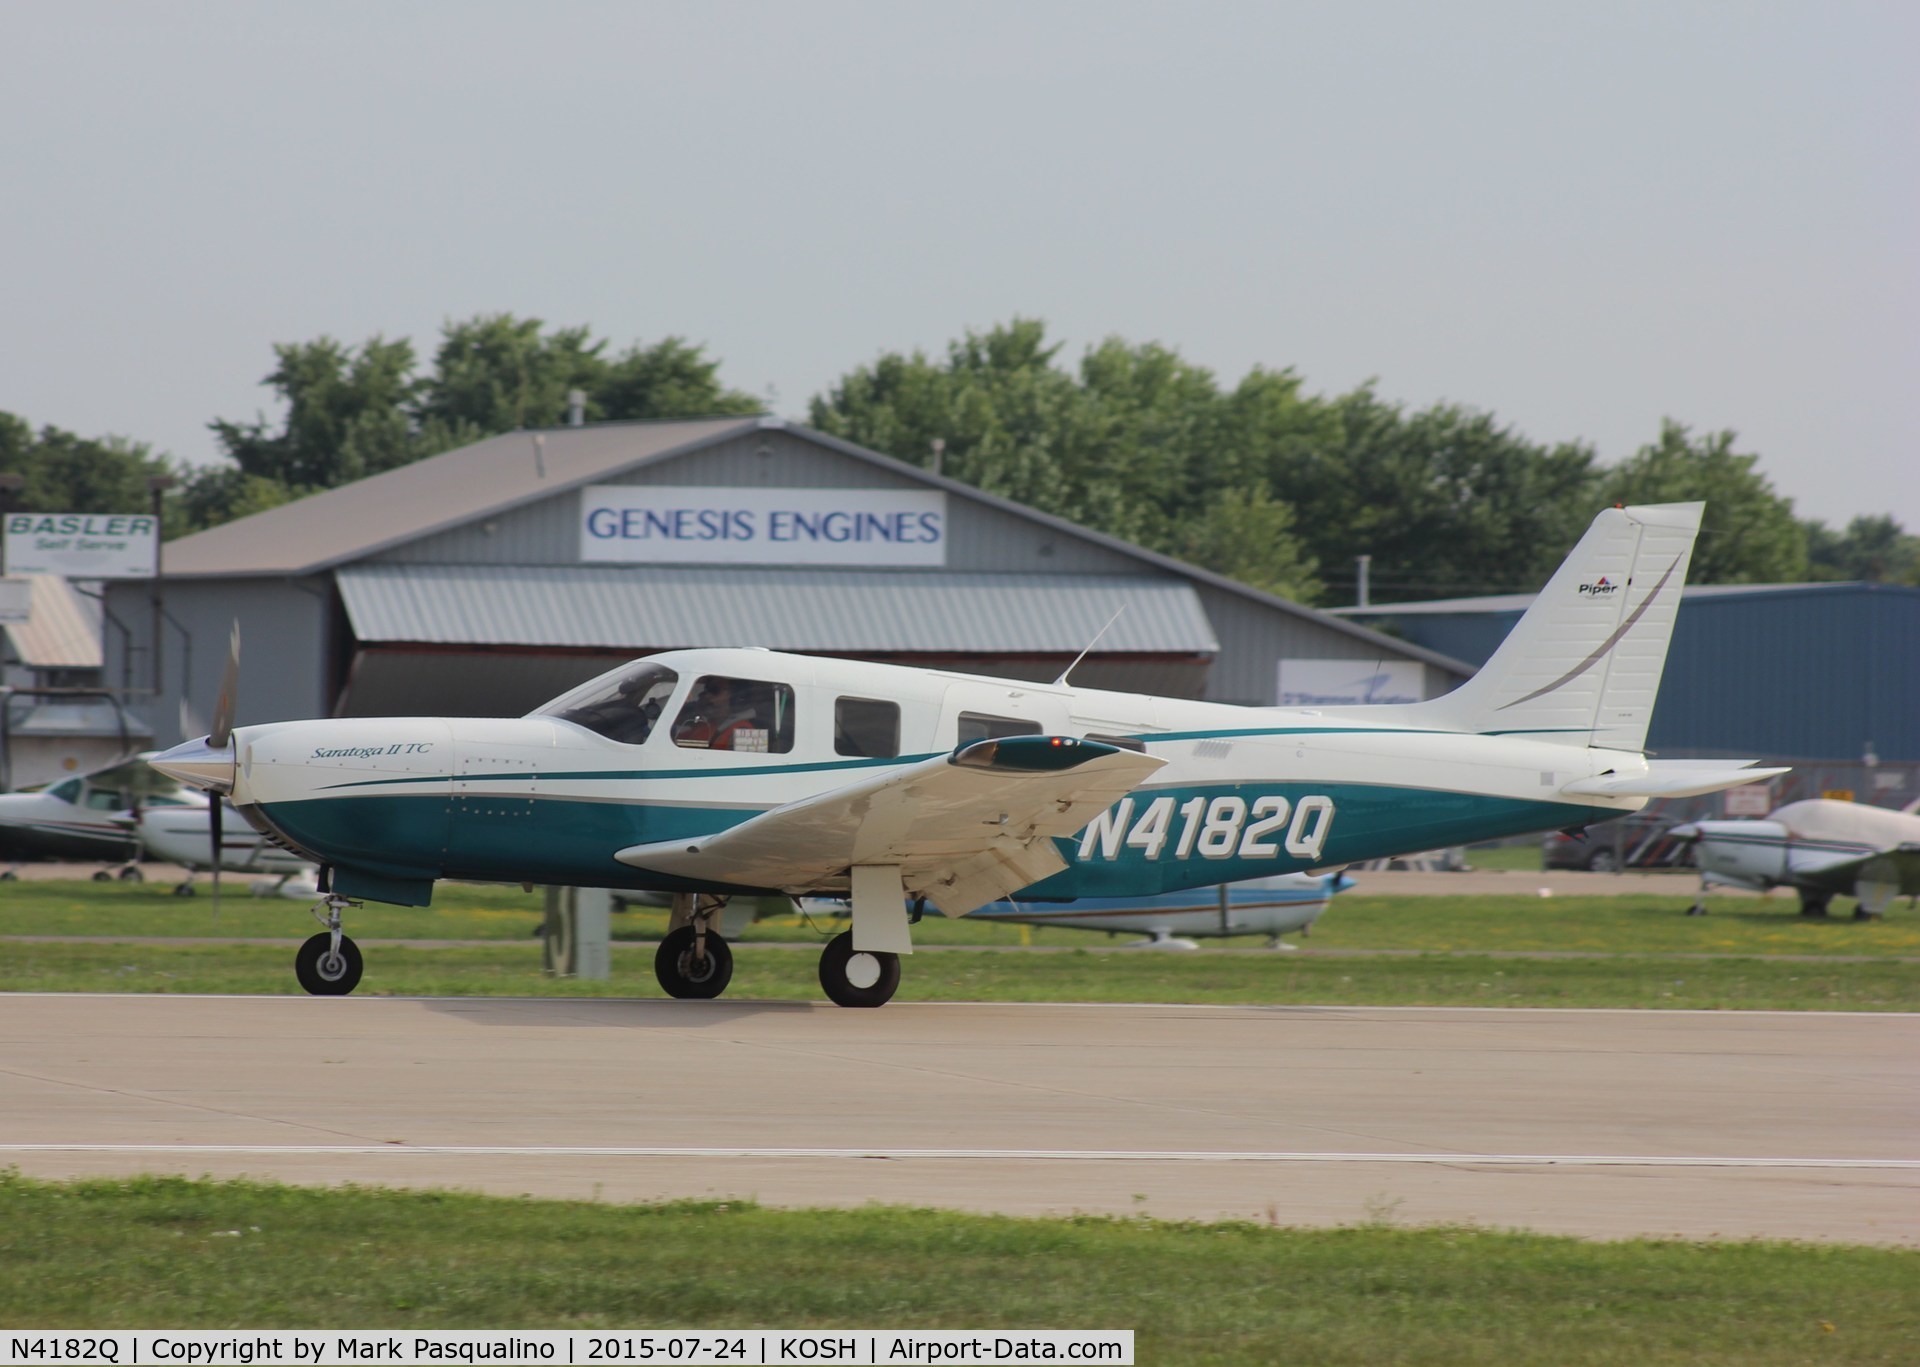 N4182Q, 2001 Piper PA-32R-301T Turbo Saratoga C/N 3257199, Piper PA-32R-301T